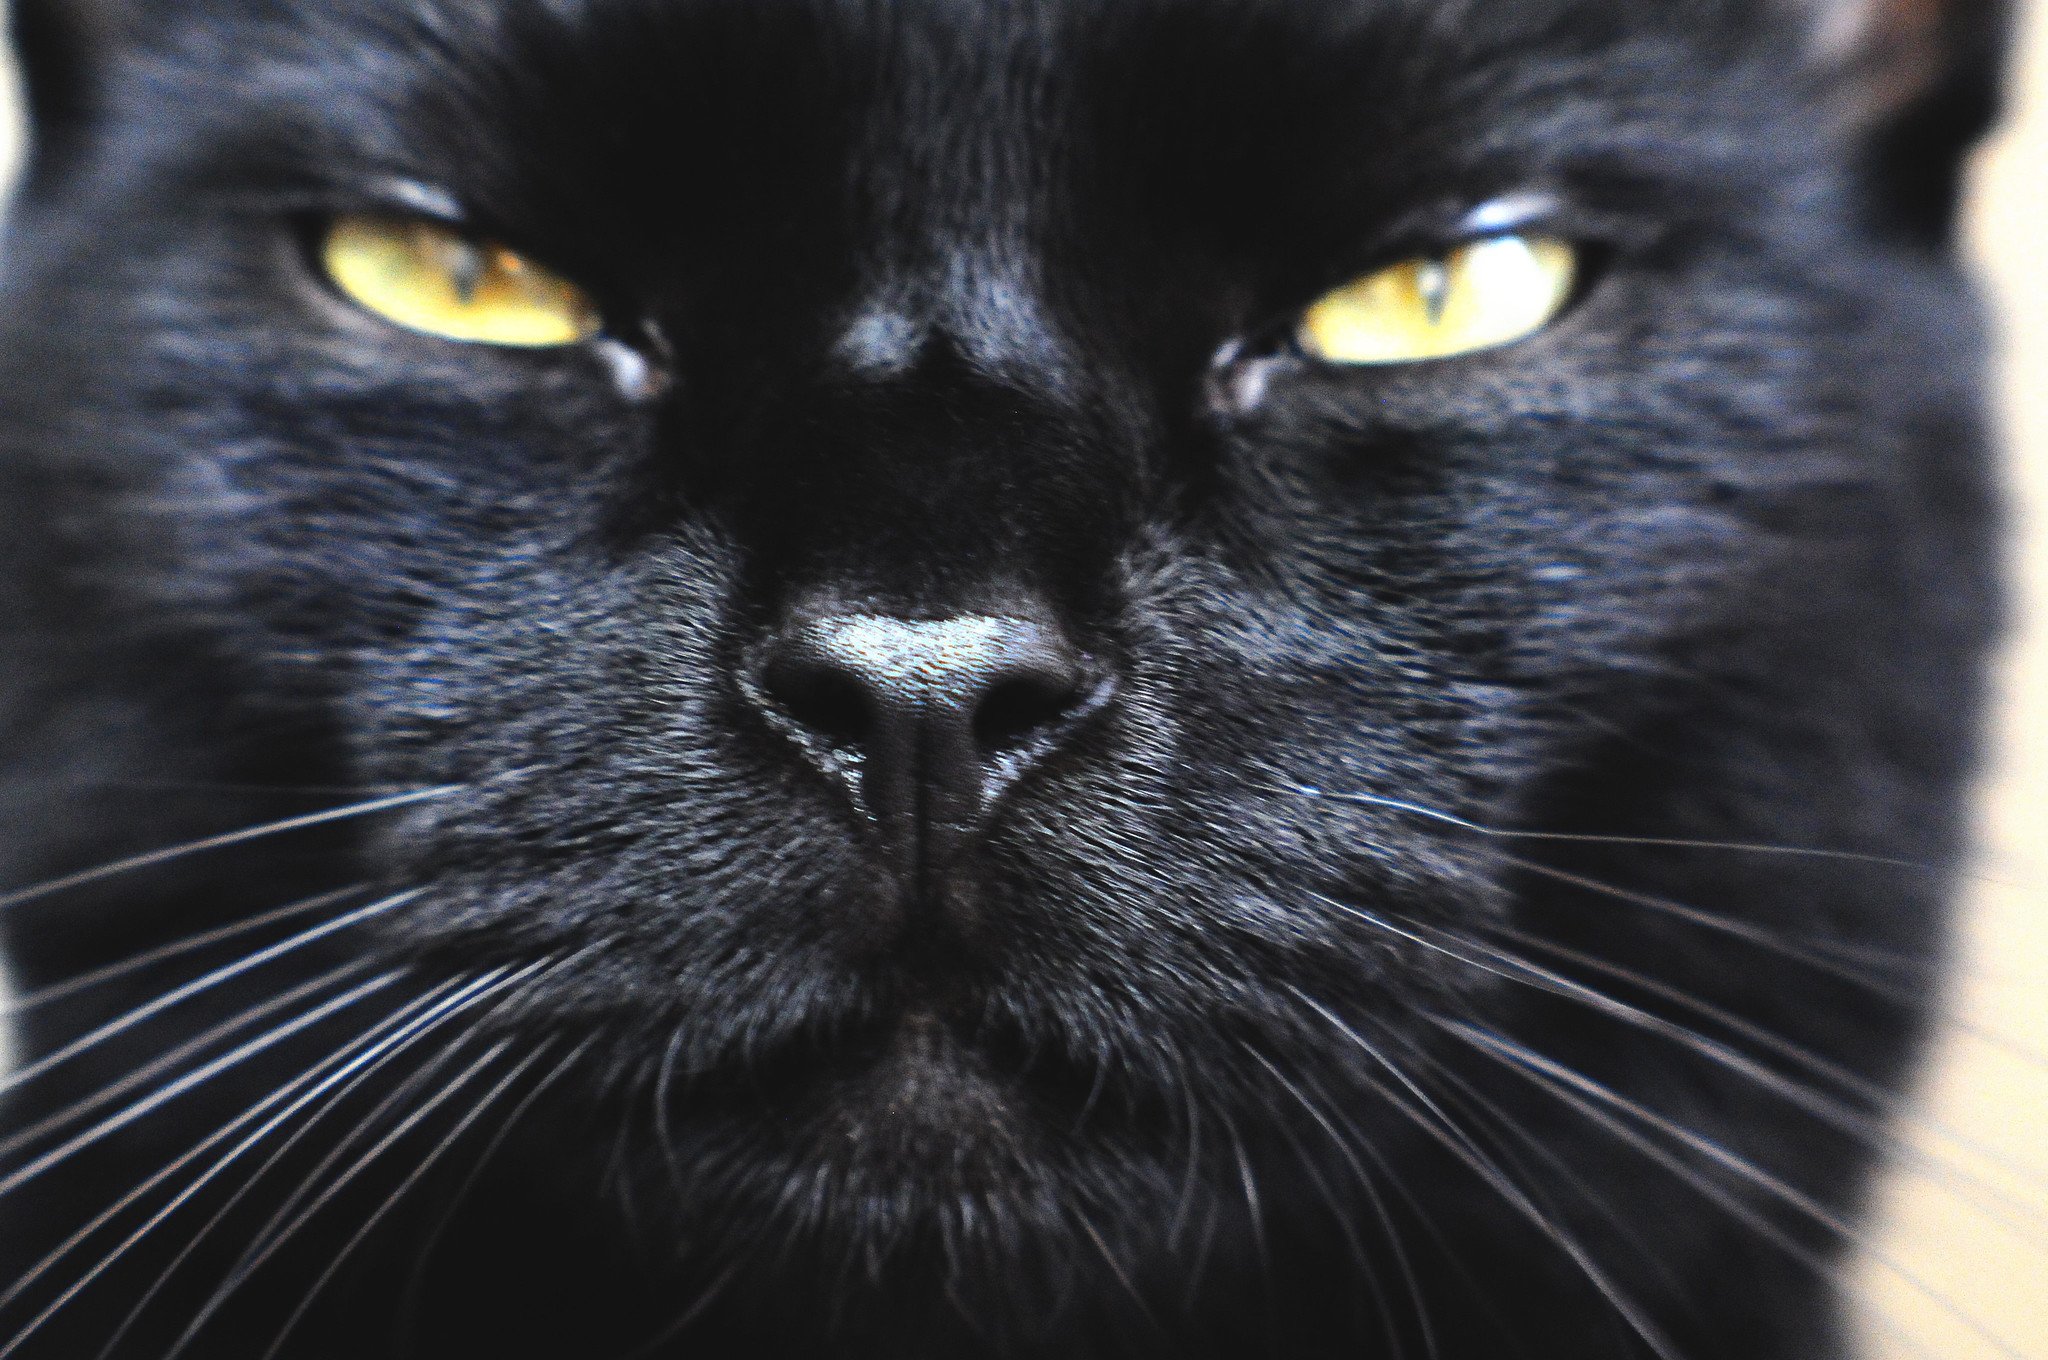 O gato Bombaim só é encontrado na cor preta, sendo semelhante a uma pequena pantera. Foto: Teakwood/Flickr